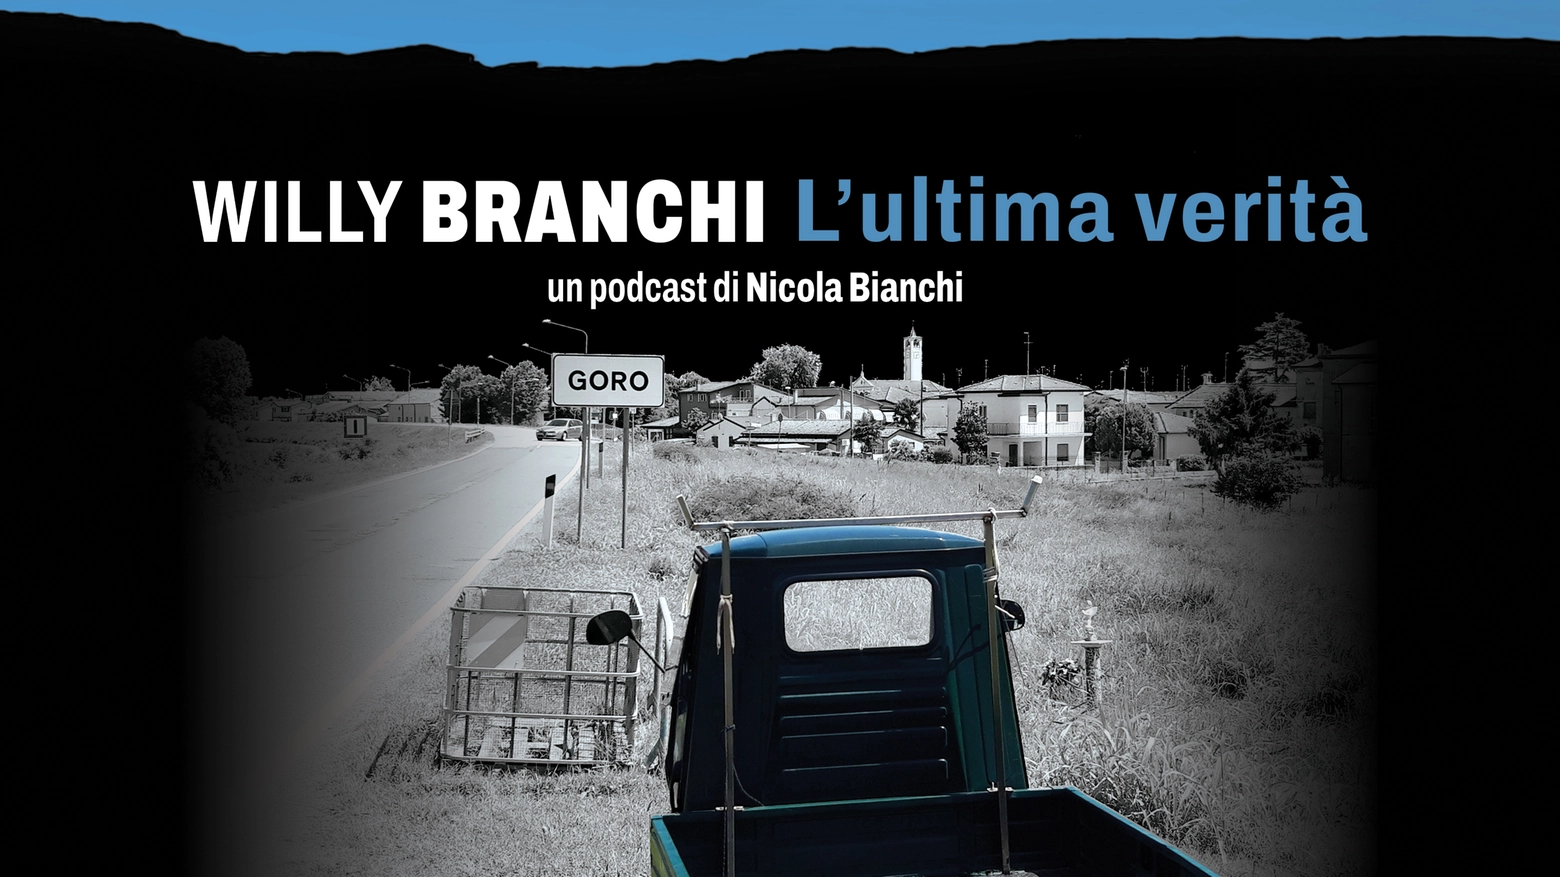 Willy Branchi, puntata 8: Ma la verità la vuole qualcuno?